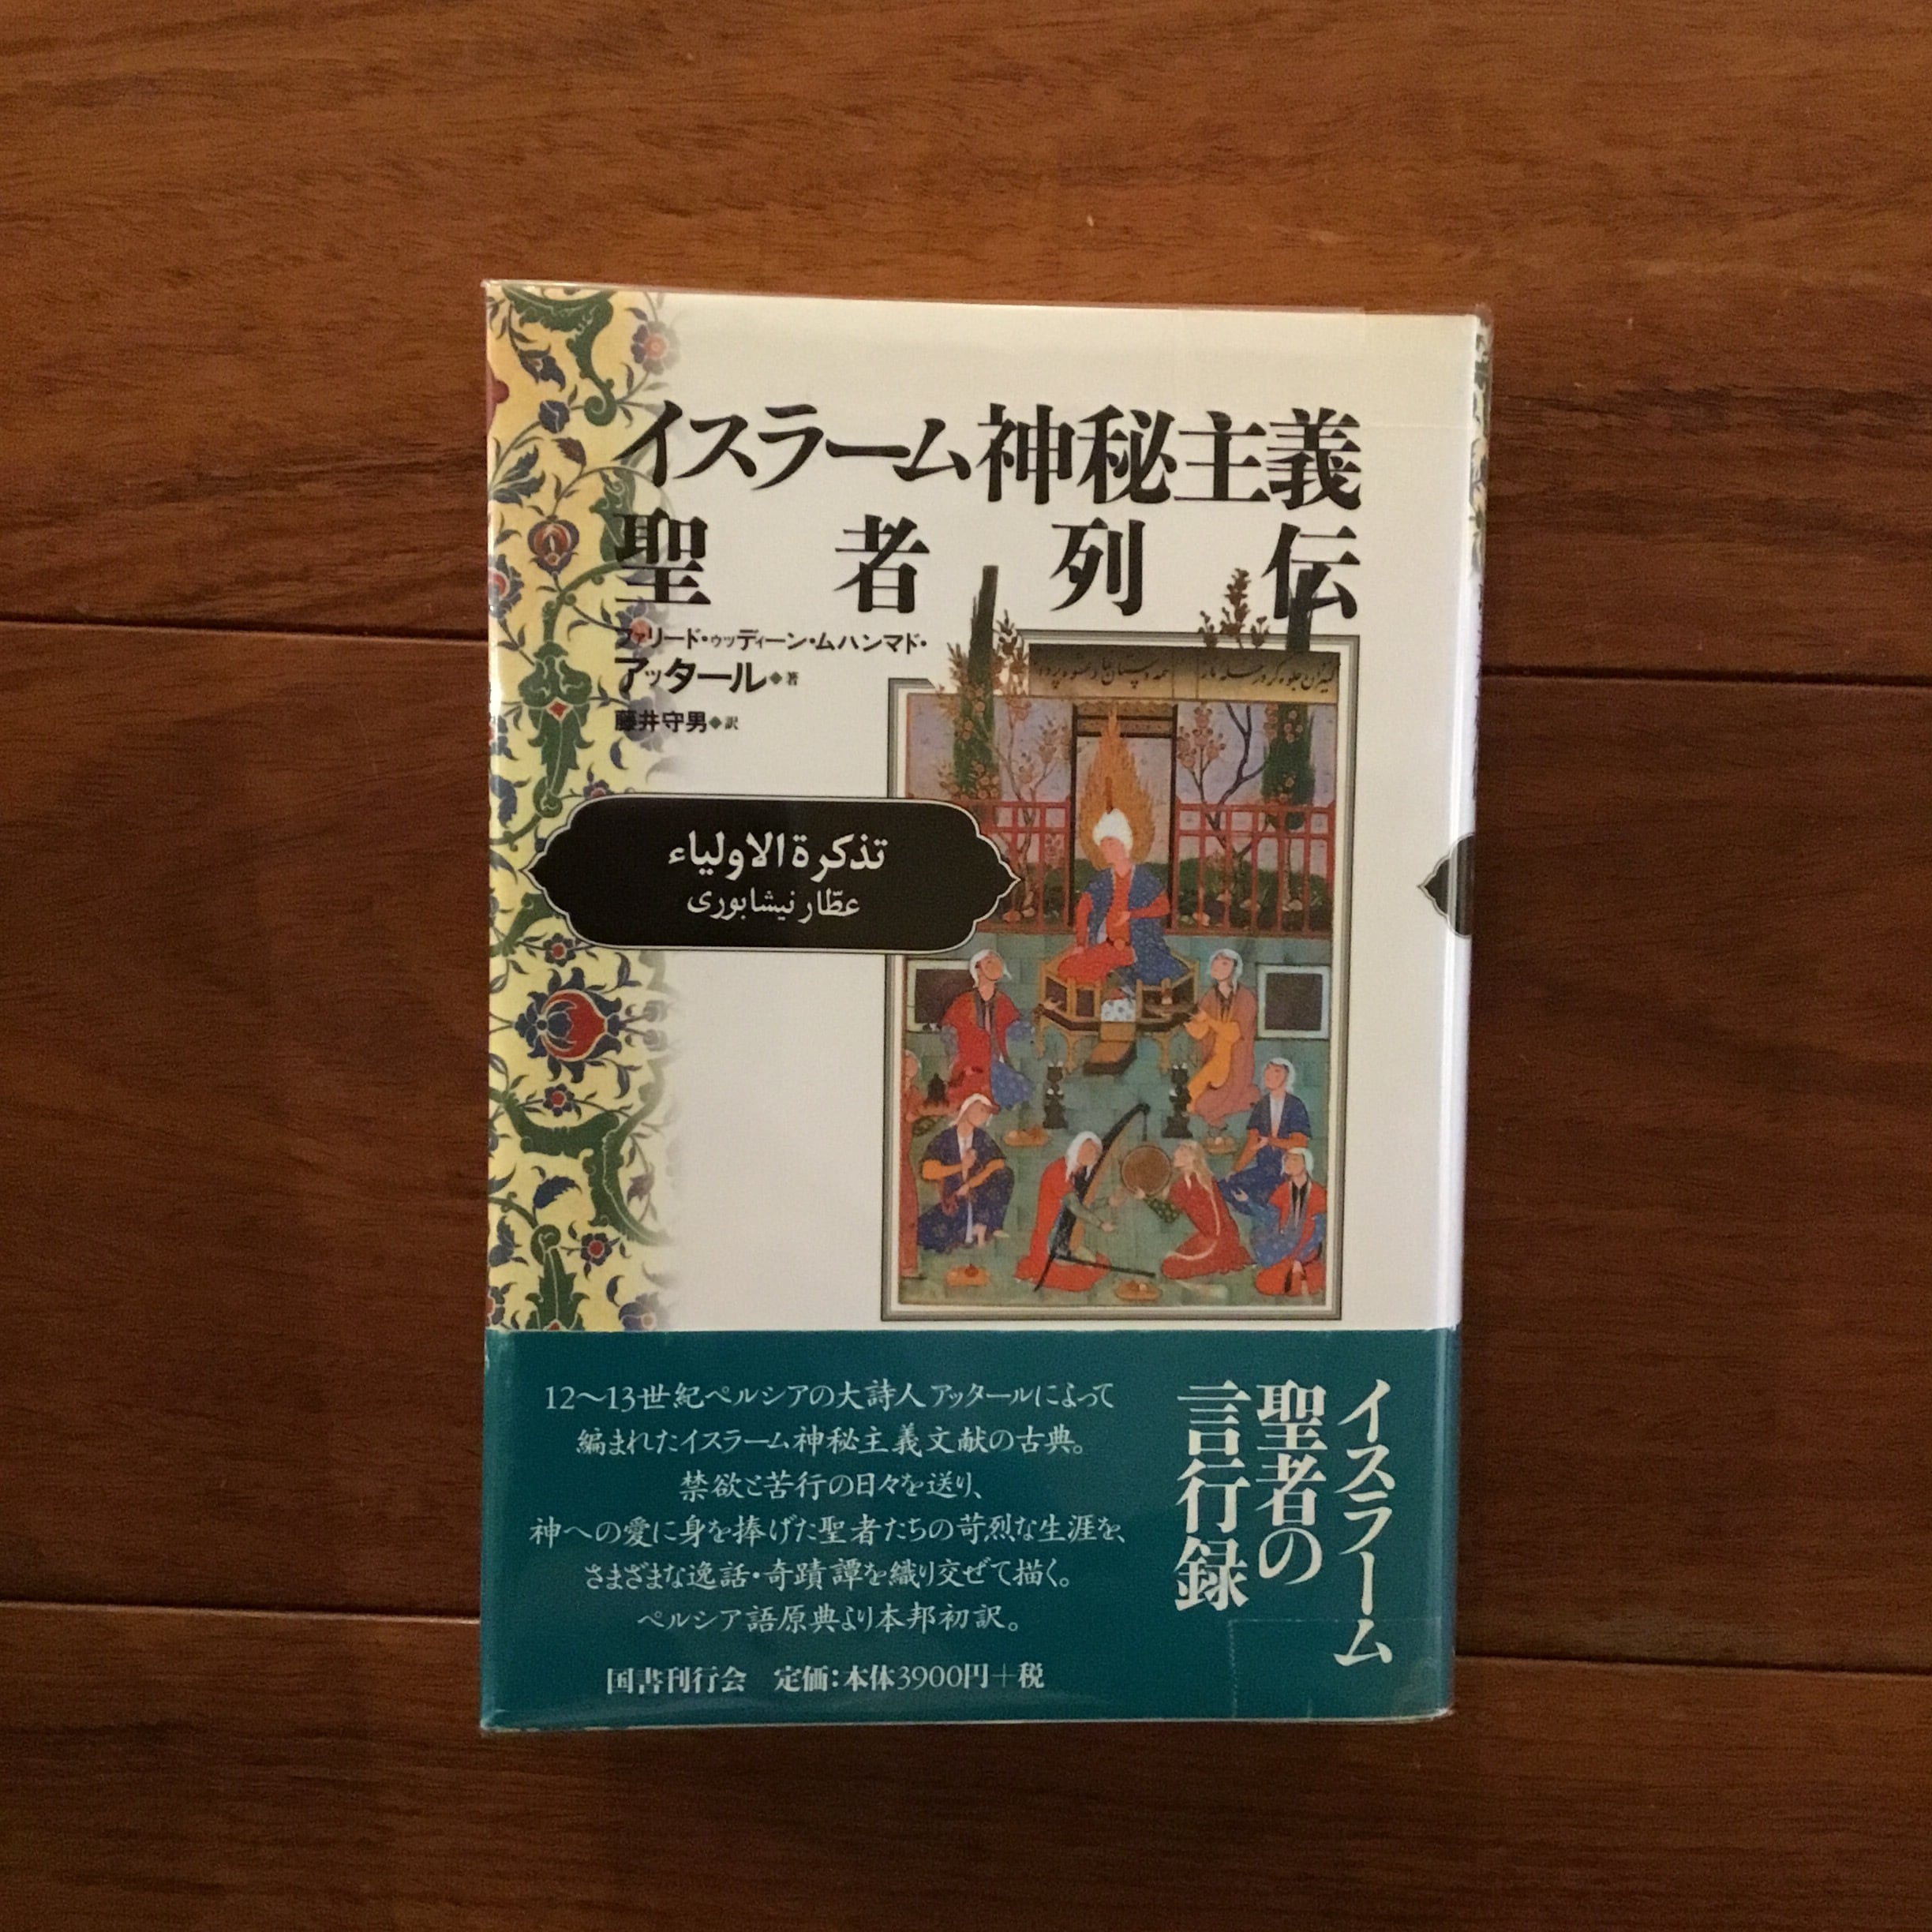 愛という奇蹟 ニーム・カロリ・ババ物語 | Flying Books